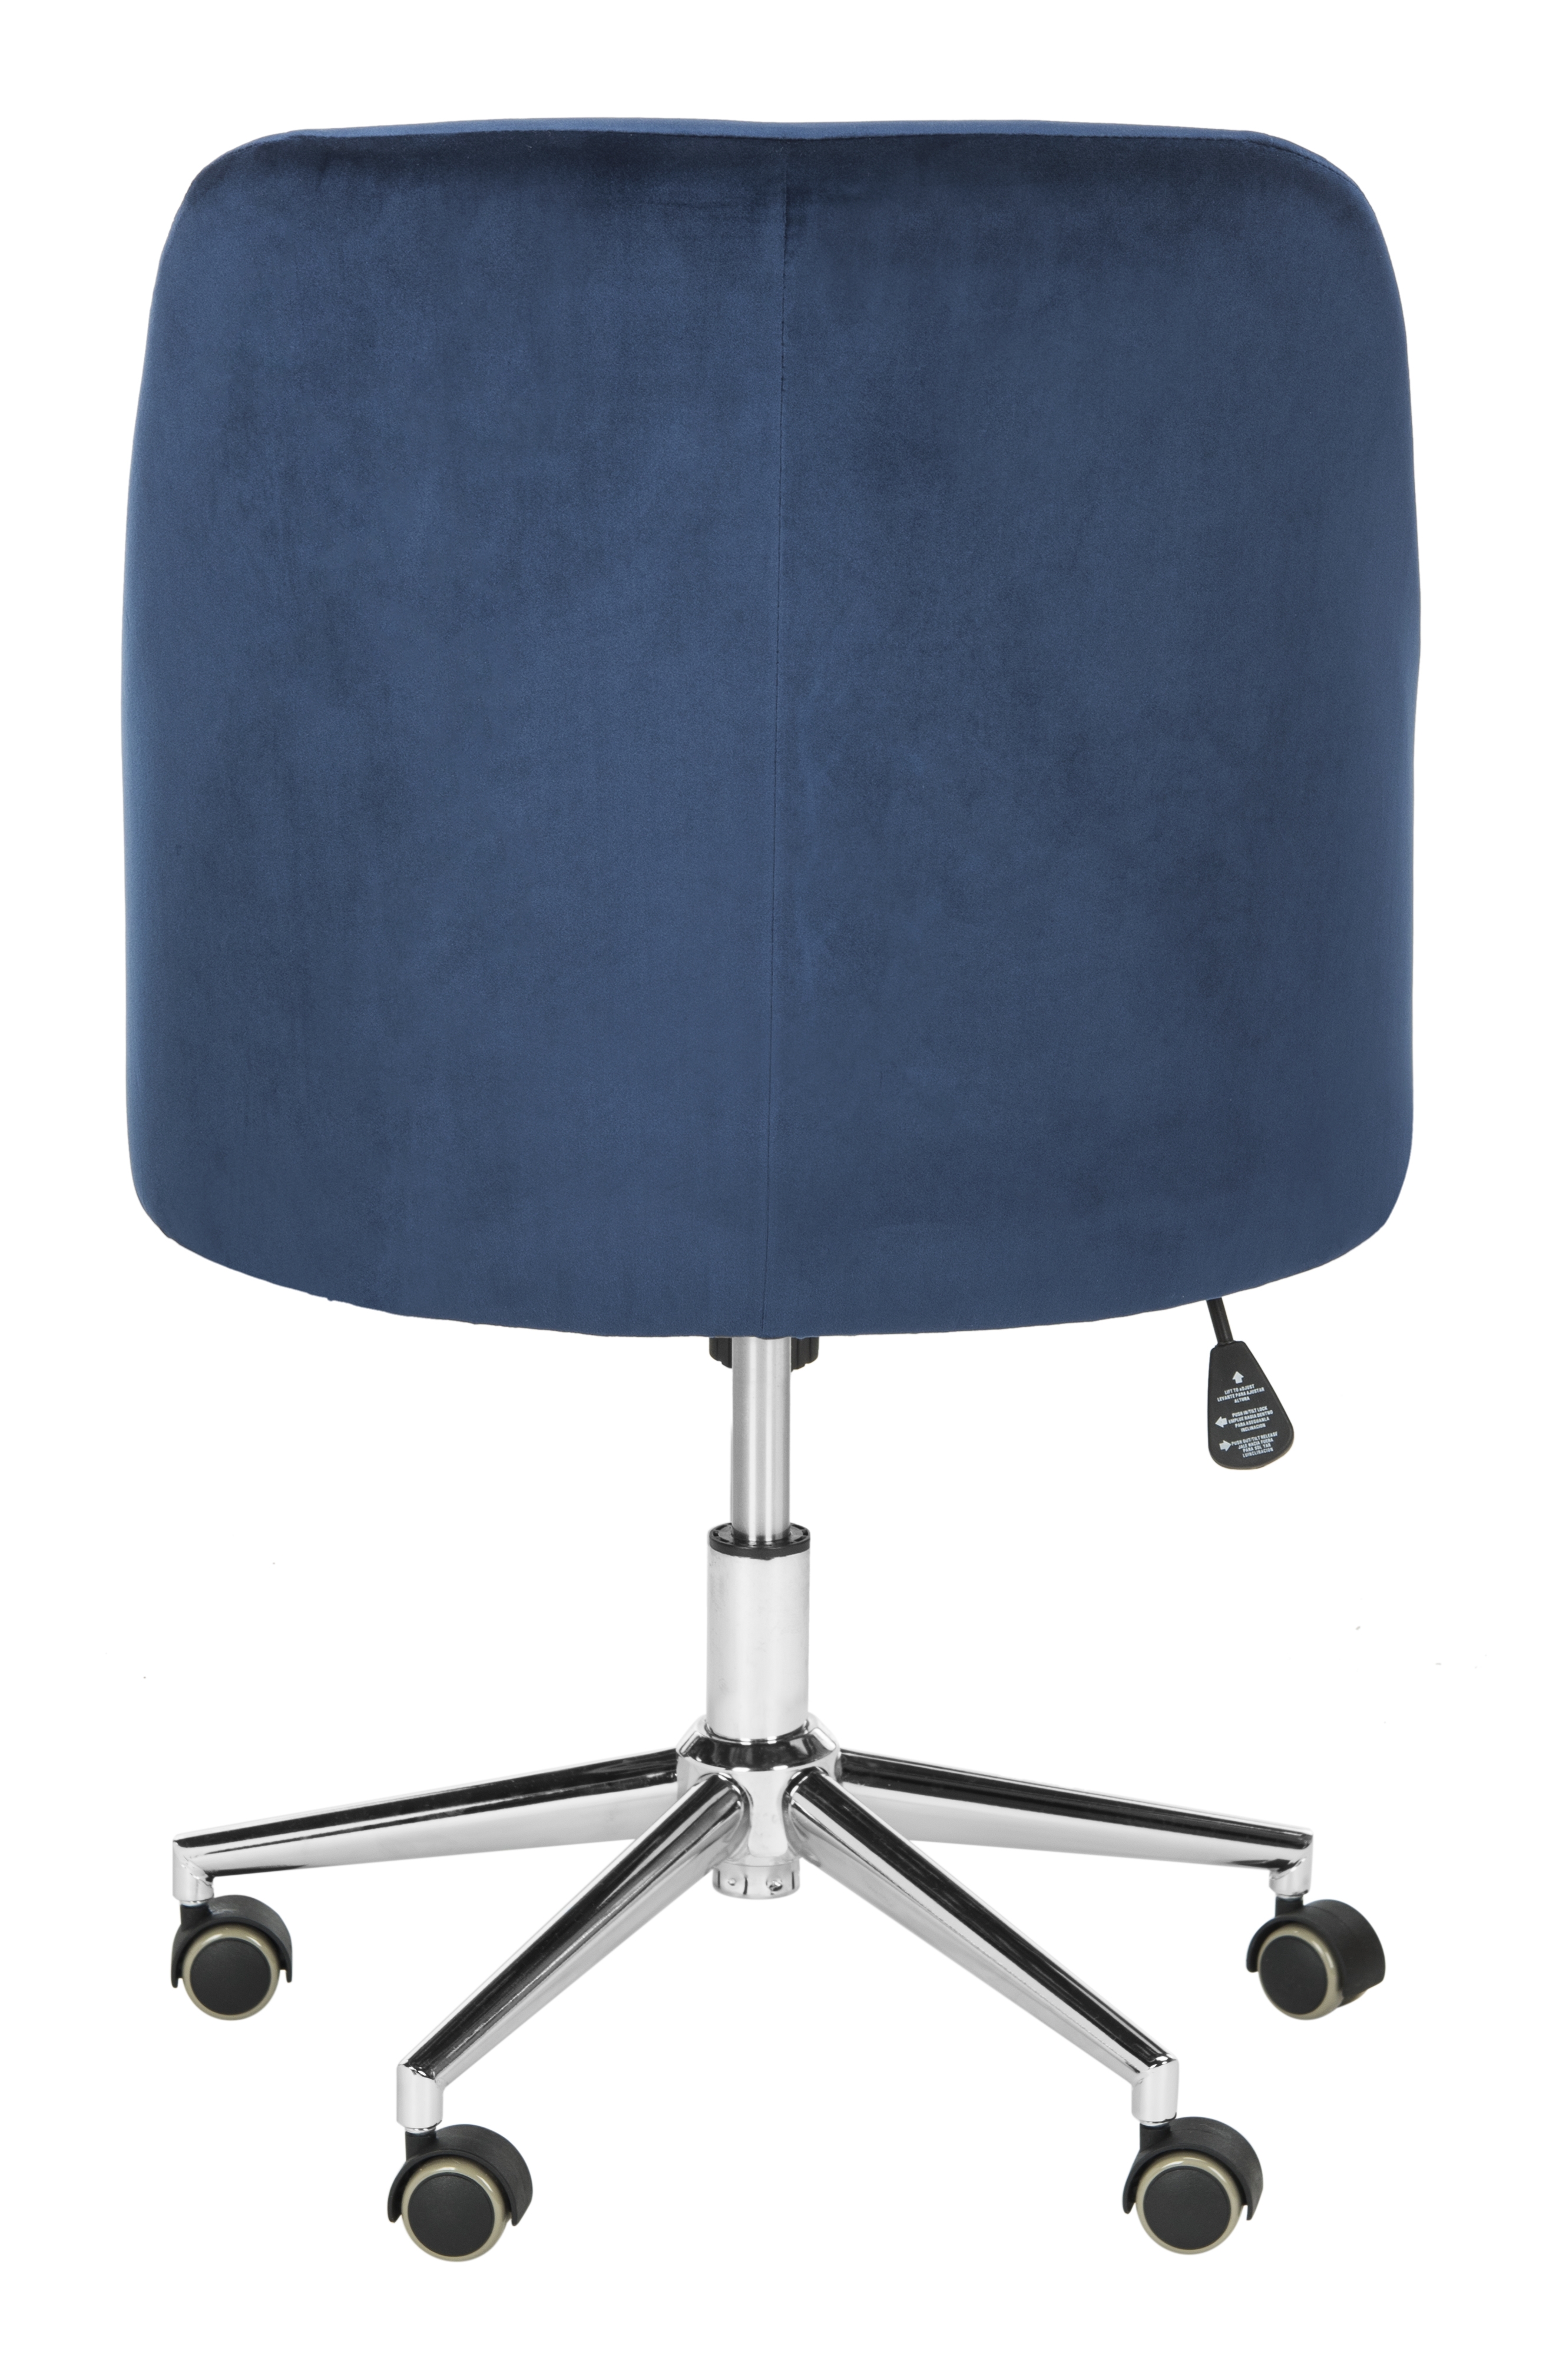 Adrienne Velvet Chrome Leg Swivel Office Chair - Navy/Chrome - Arlo Home - Image 3